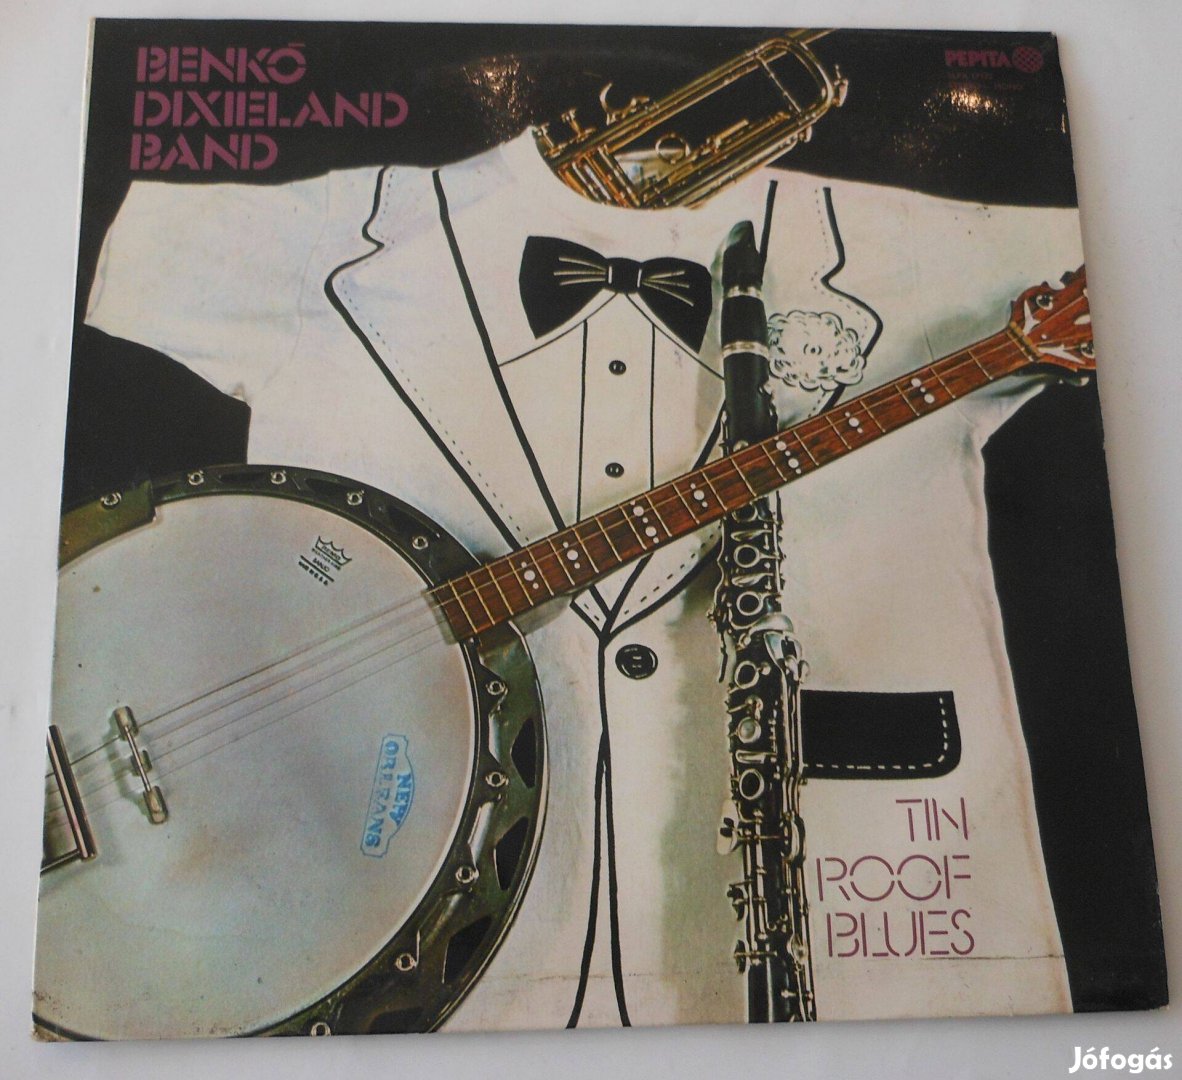 Benkó Dixiland Band: Tin roof blues LP